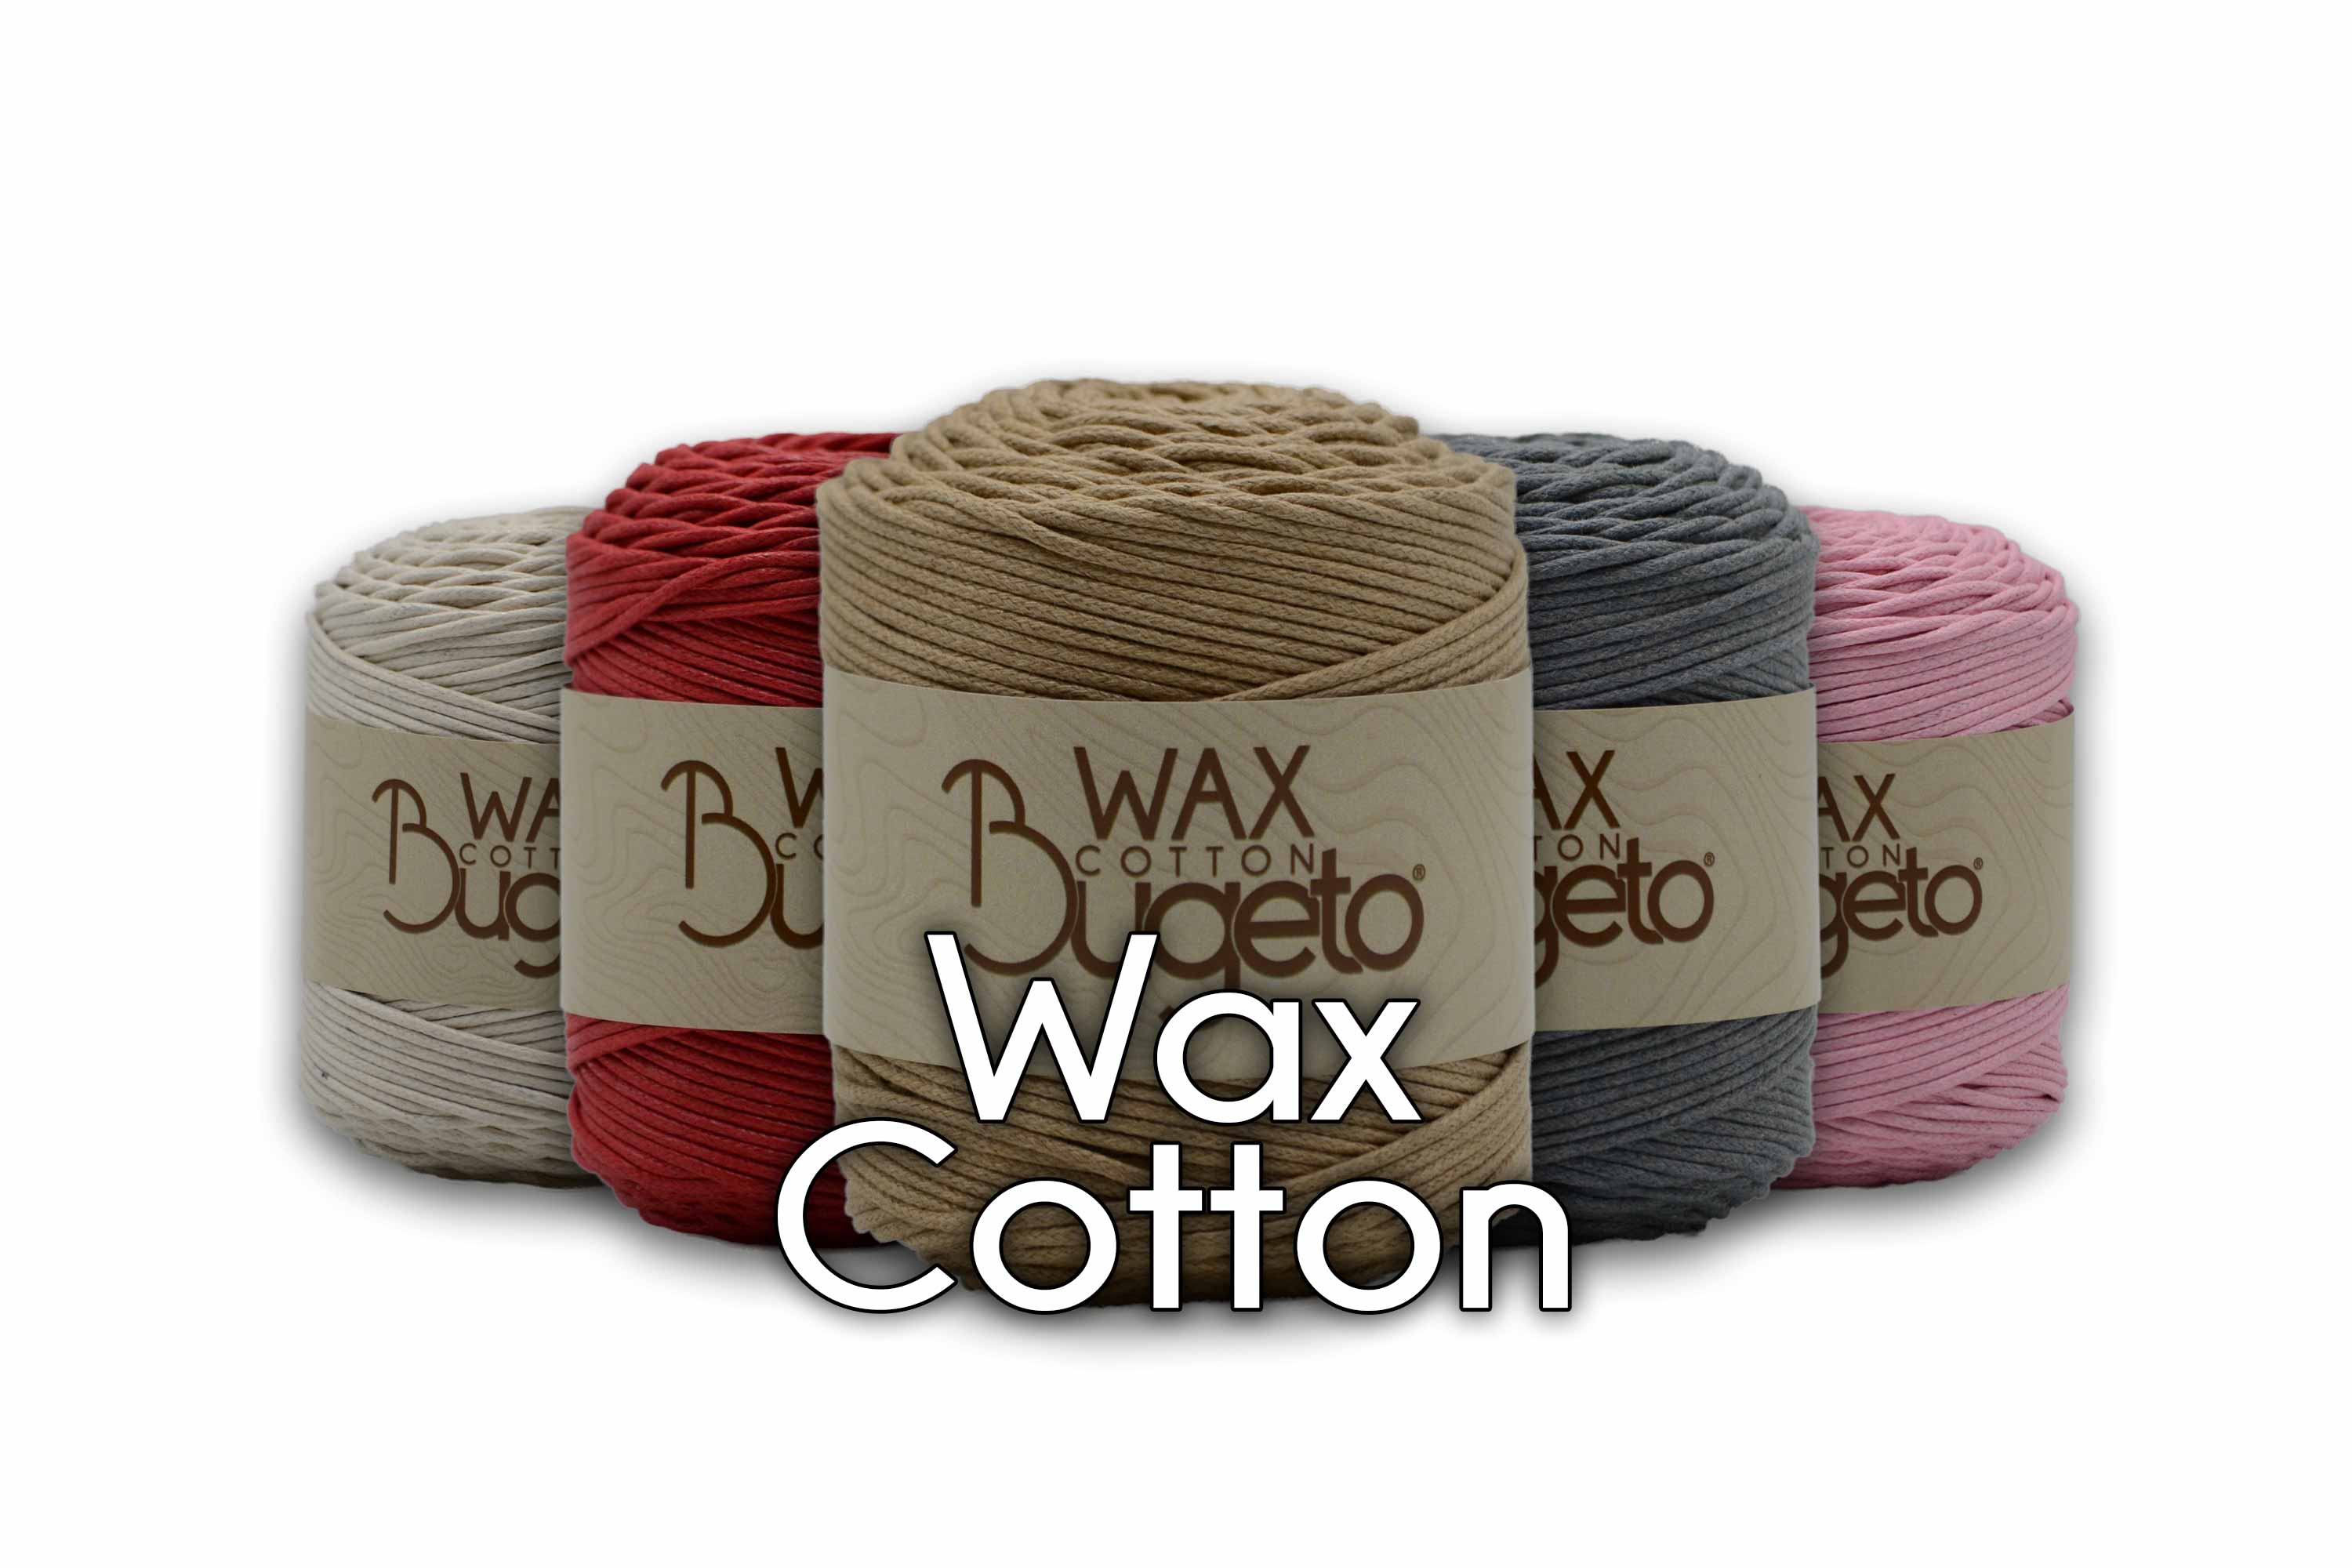 cotton lady yarns  lady cotton twist yarn bugeto yarn